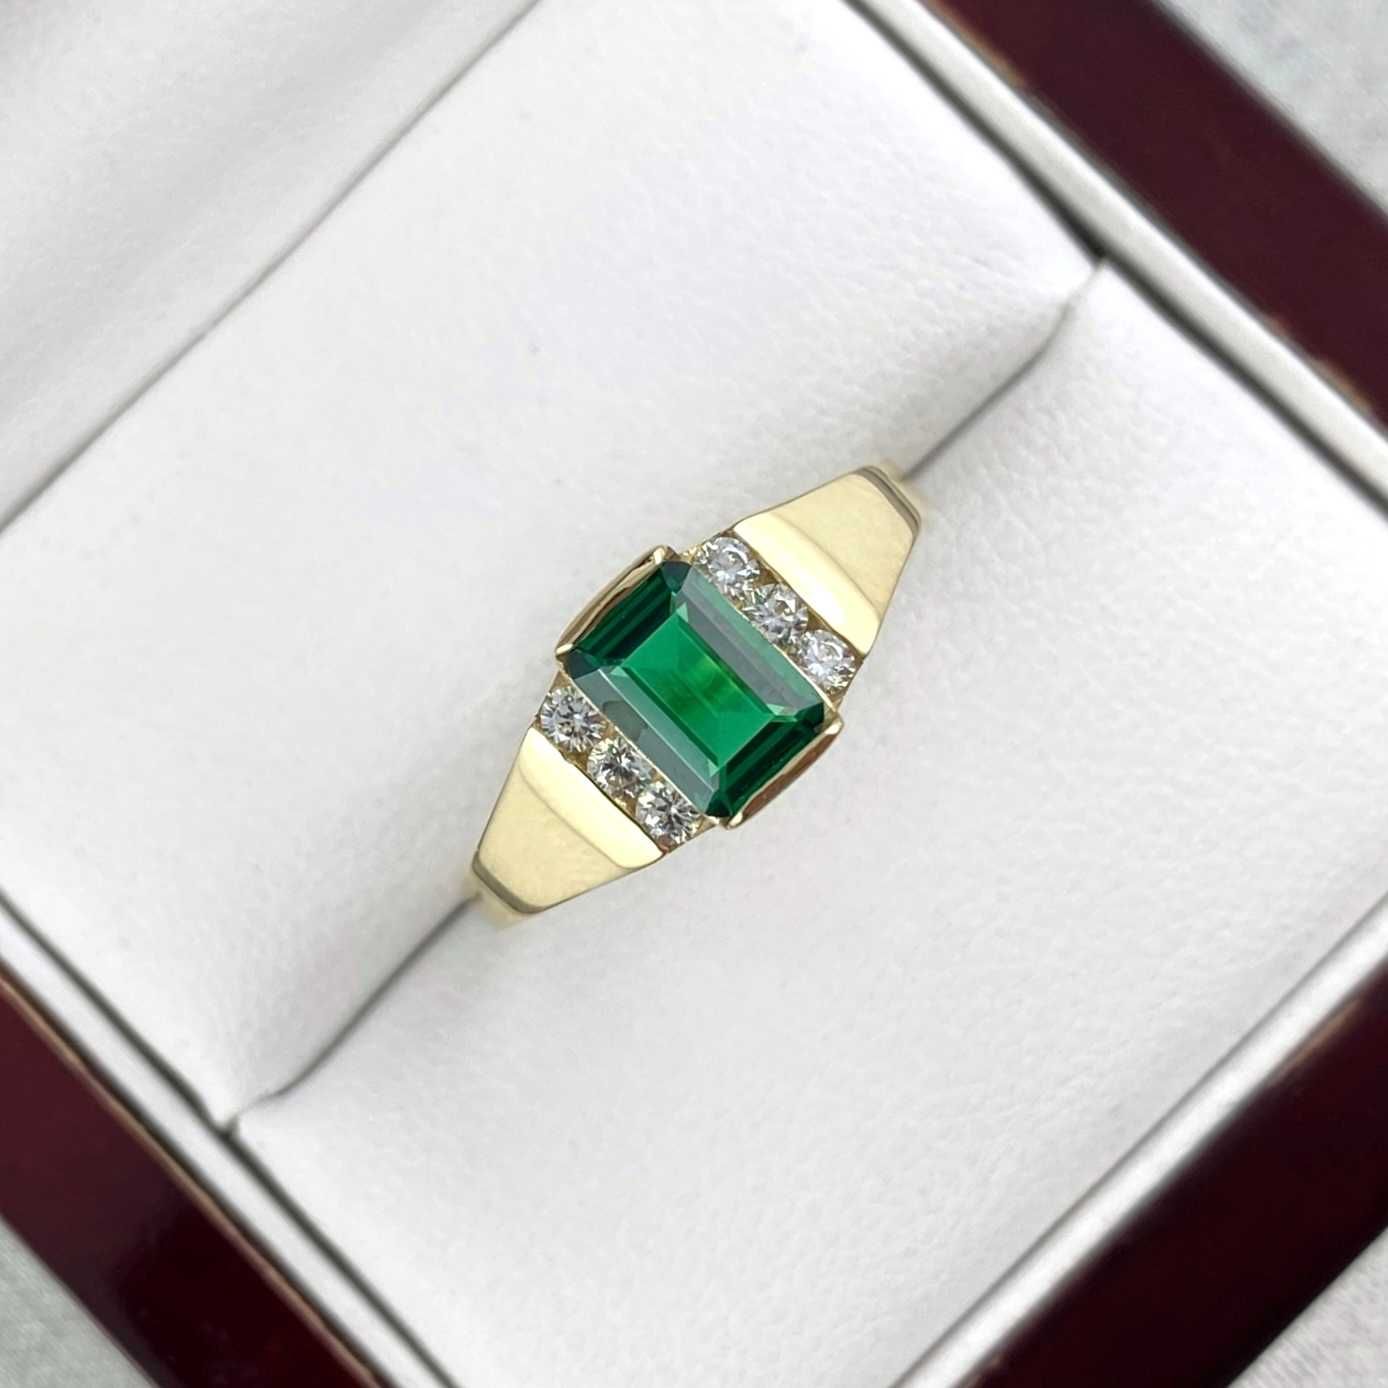 Cudowny ZŁOTY pierścionek z zieloną cyrkonią PR. 585 (14K) rozmiar 18